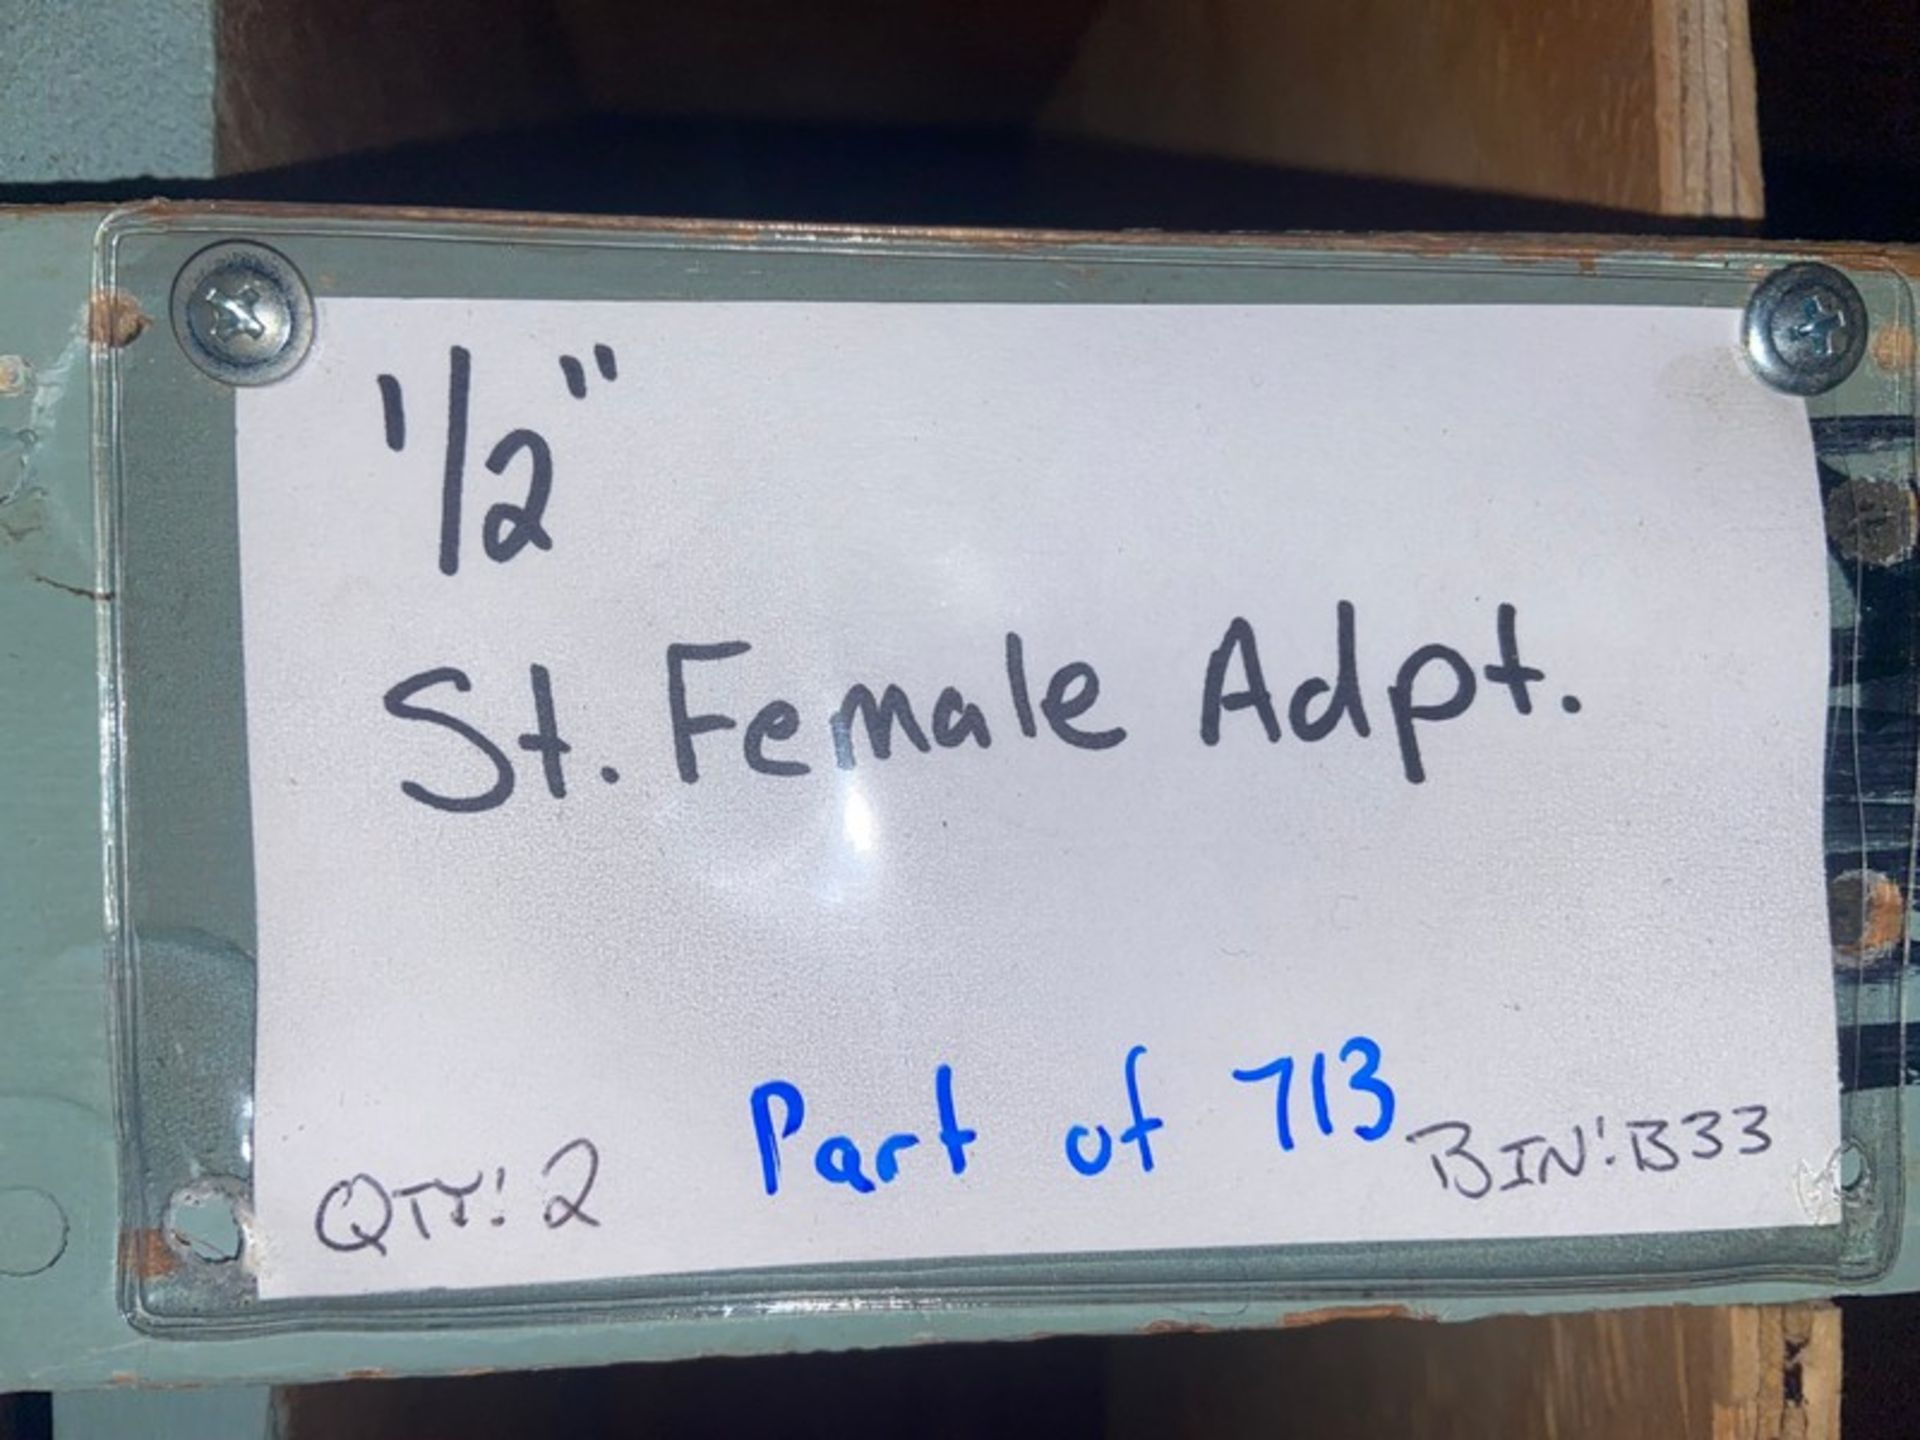 (147) Copper 1/2" Female Adpt. (Bin: B31/B32), with (2) Copper 1/2" St. Female Adpt. (Bin: B33) ( - Image 4 of 4